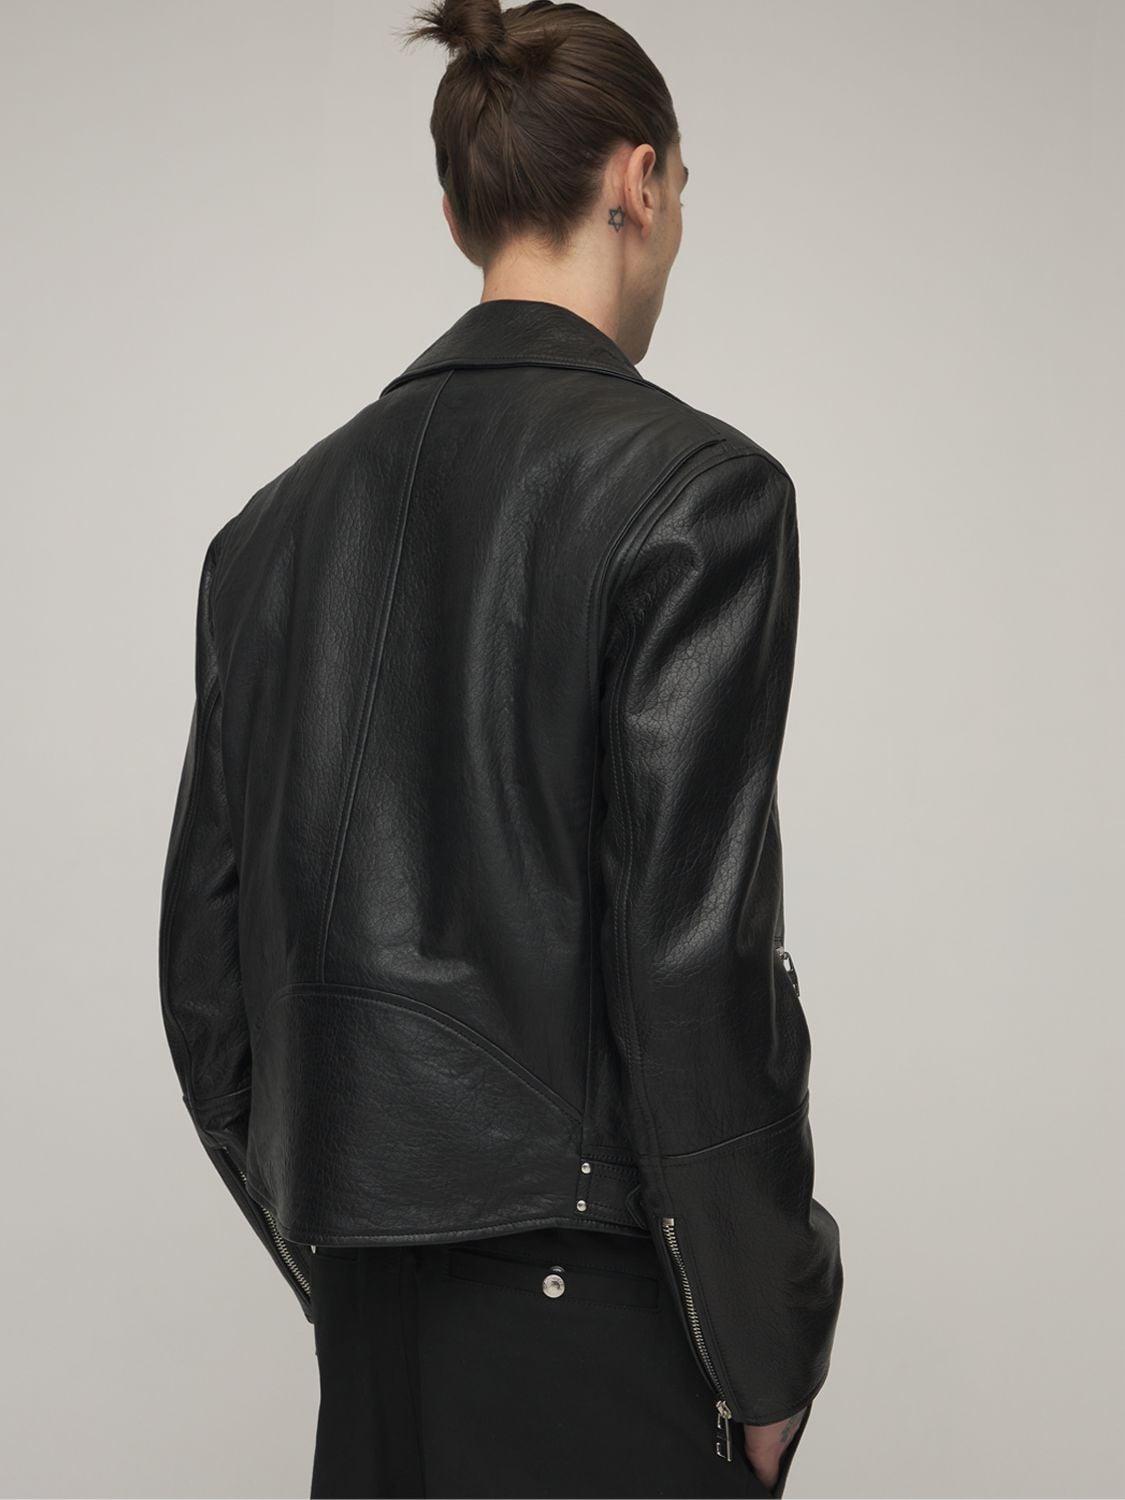 Alexander McQueen Classic Leather Biker Jacket in Black for Men - Lyst